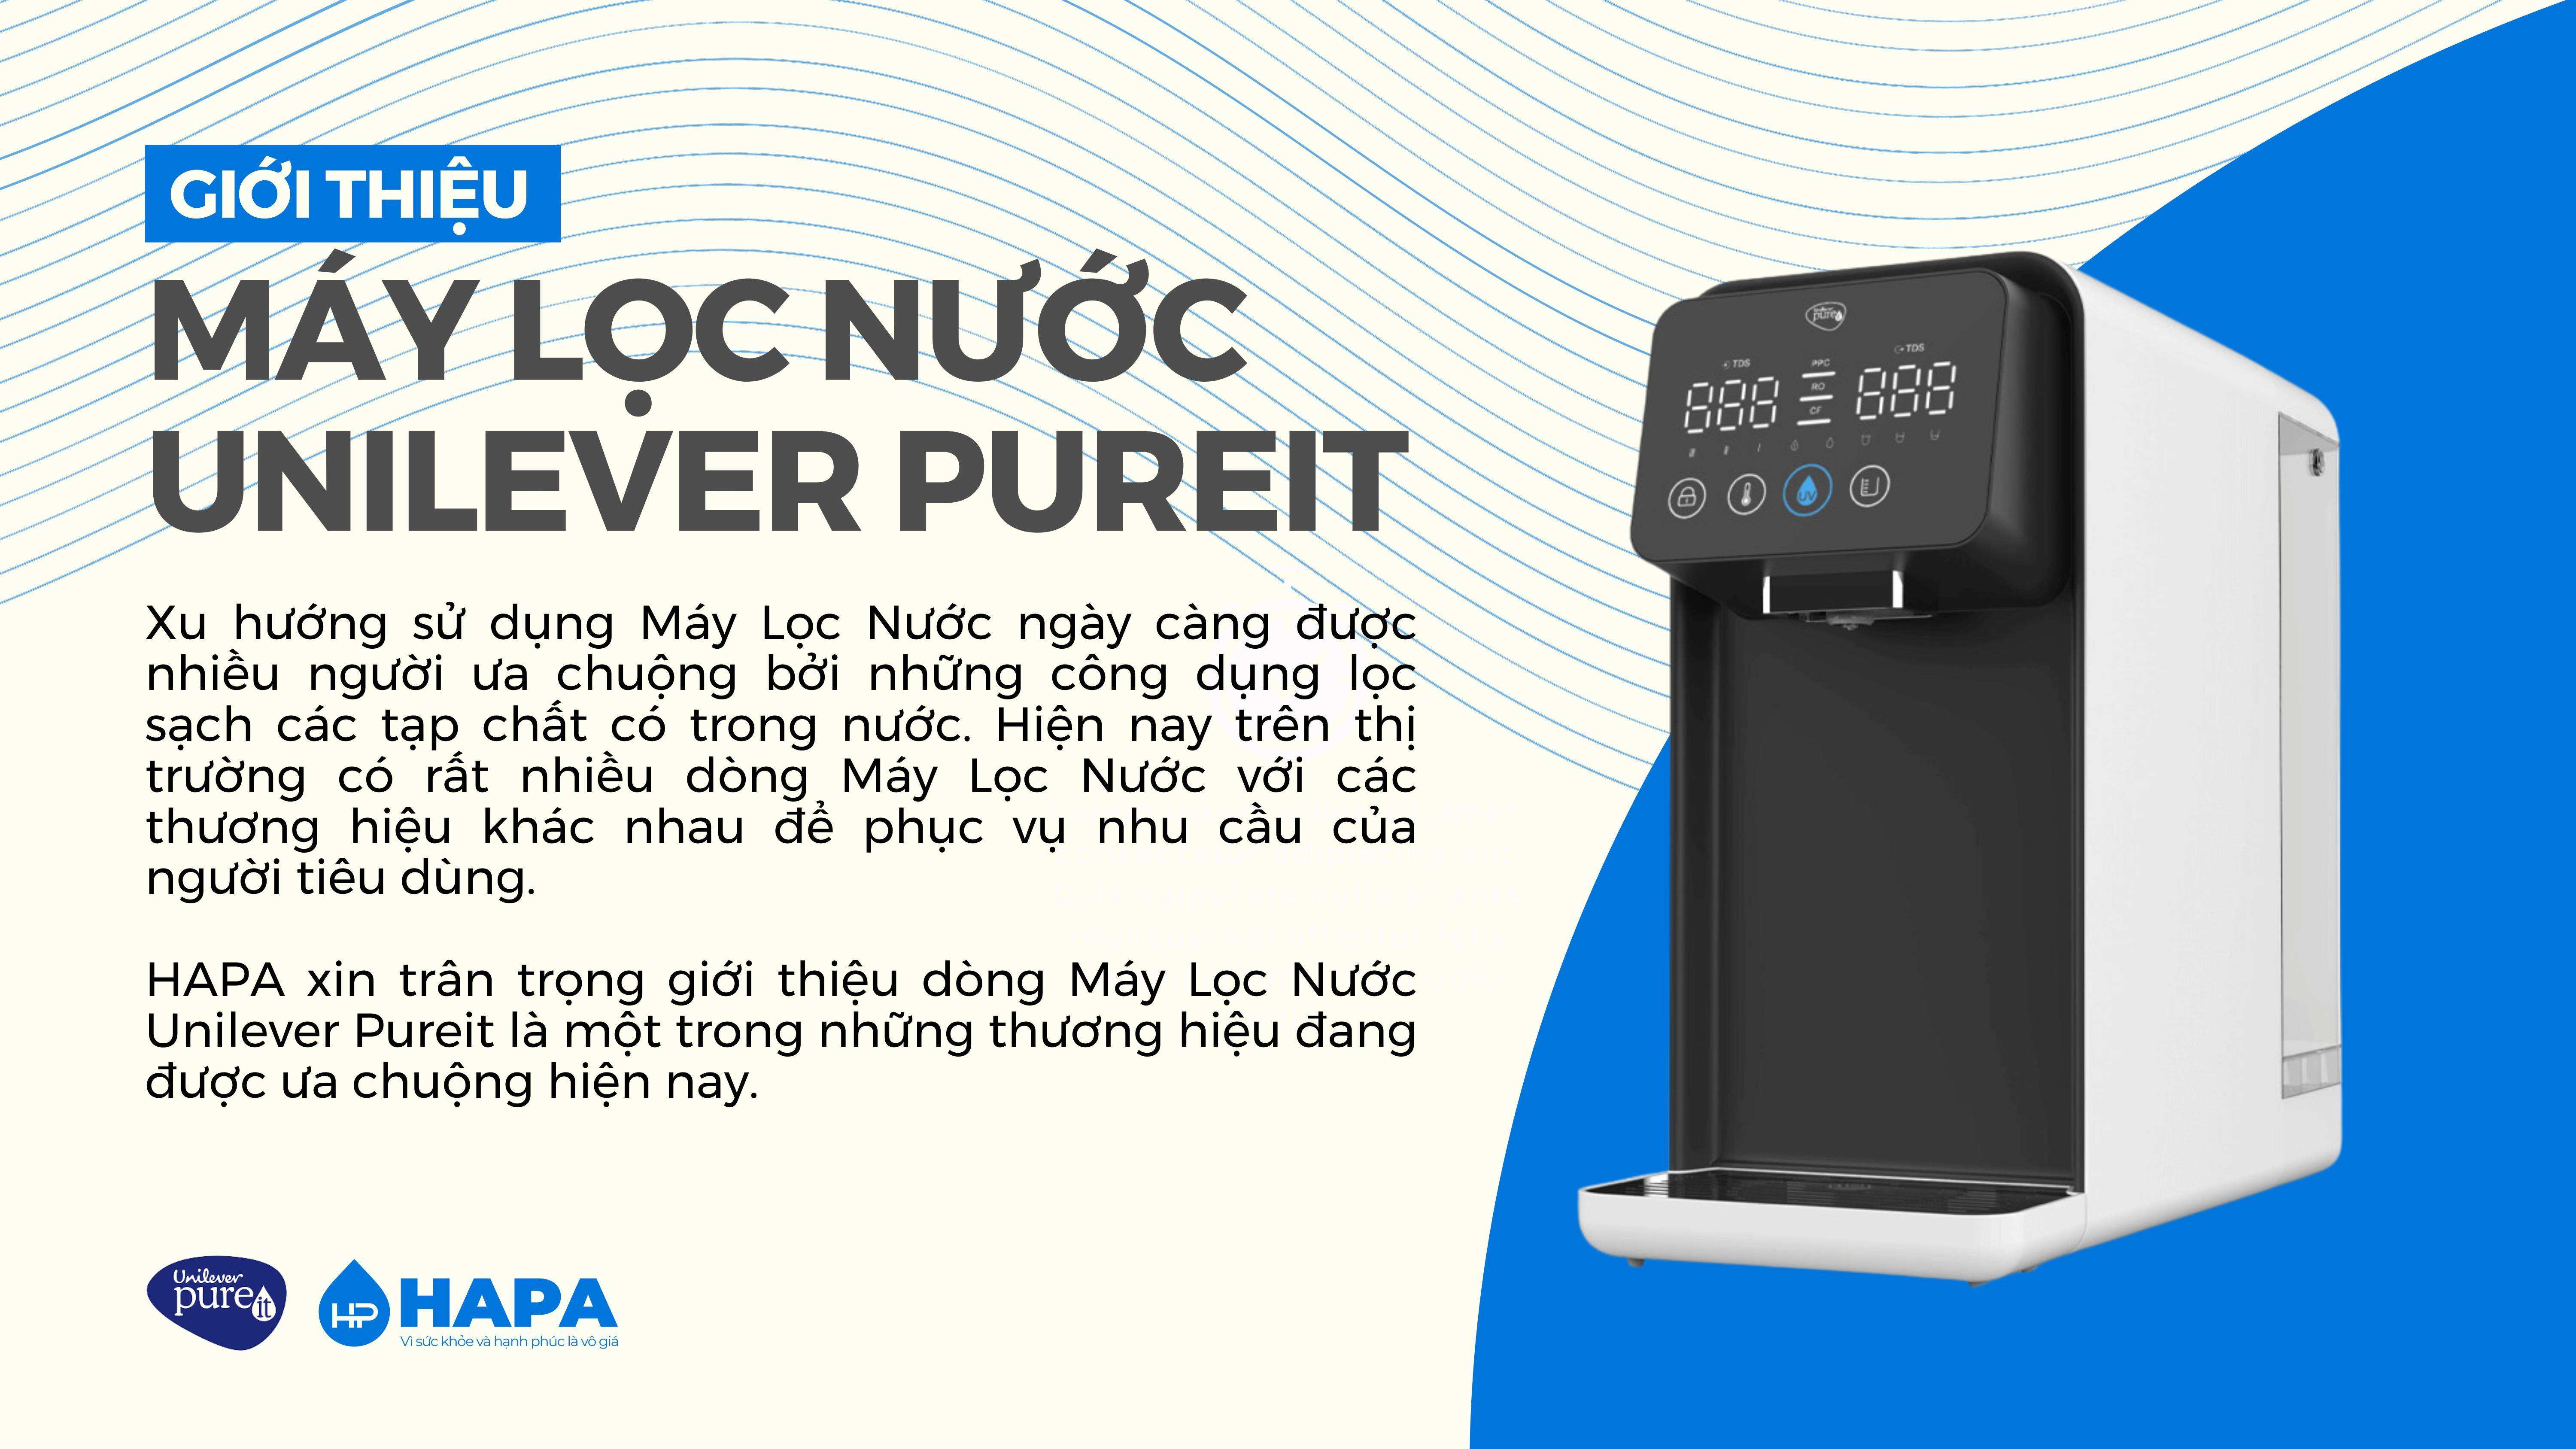 Giới thiệu về Máy Lọc Nước Unilever Pureit